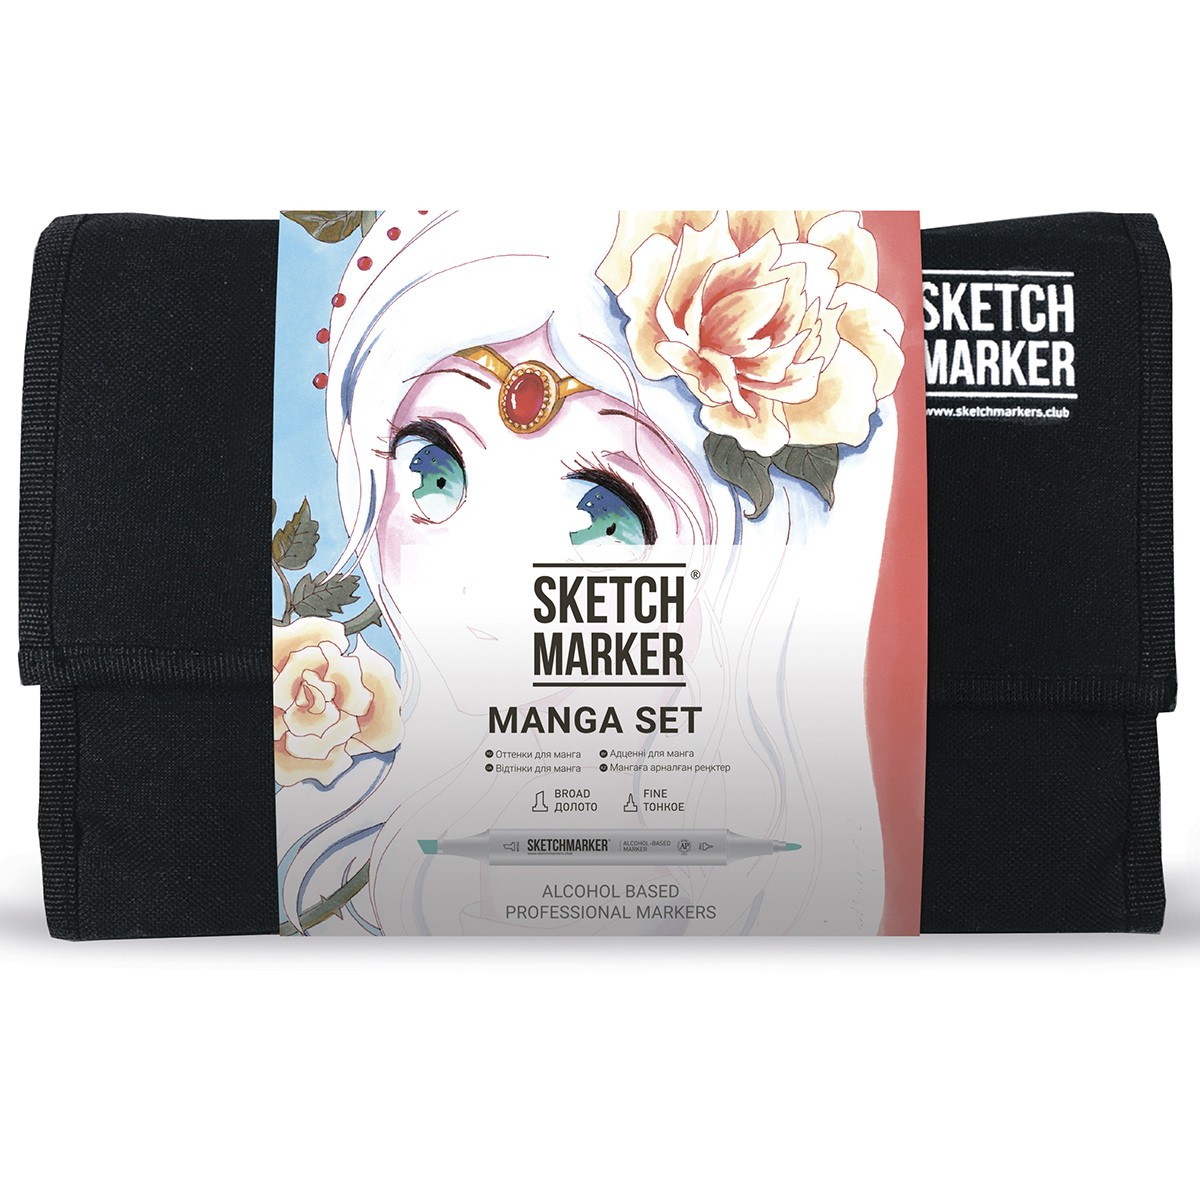 Набор маркеров Sketchmarker Manga set 24 Манга набор (24 маркера + сумка органайзер) манга основы и техники для начинающих